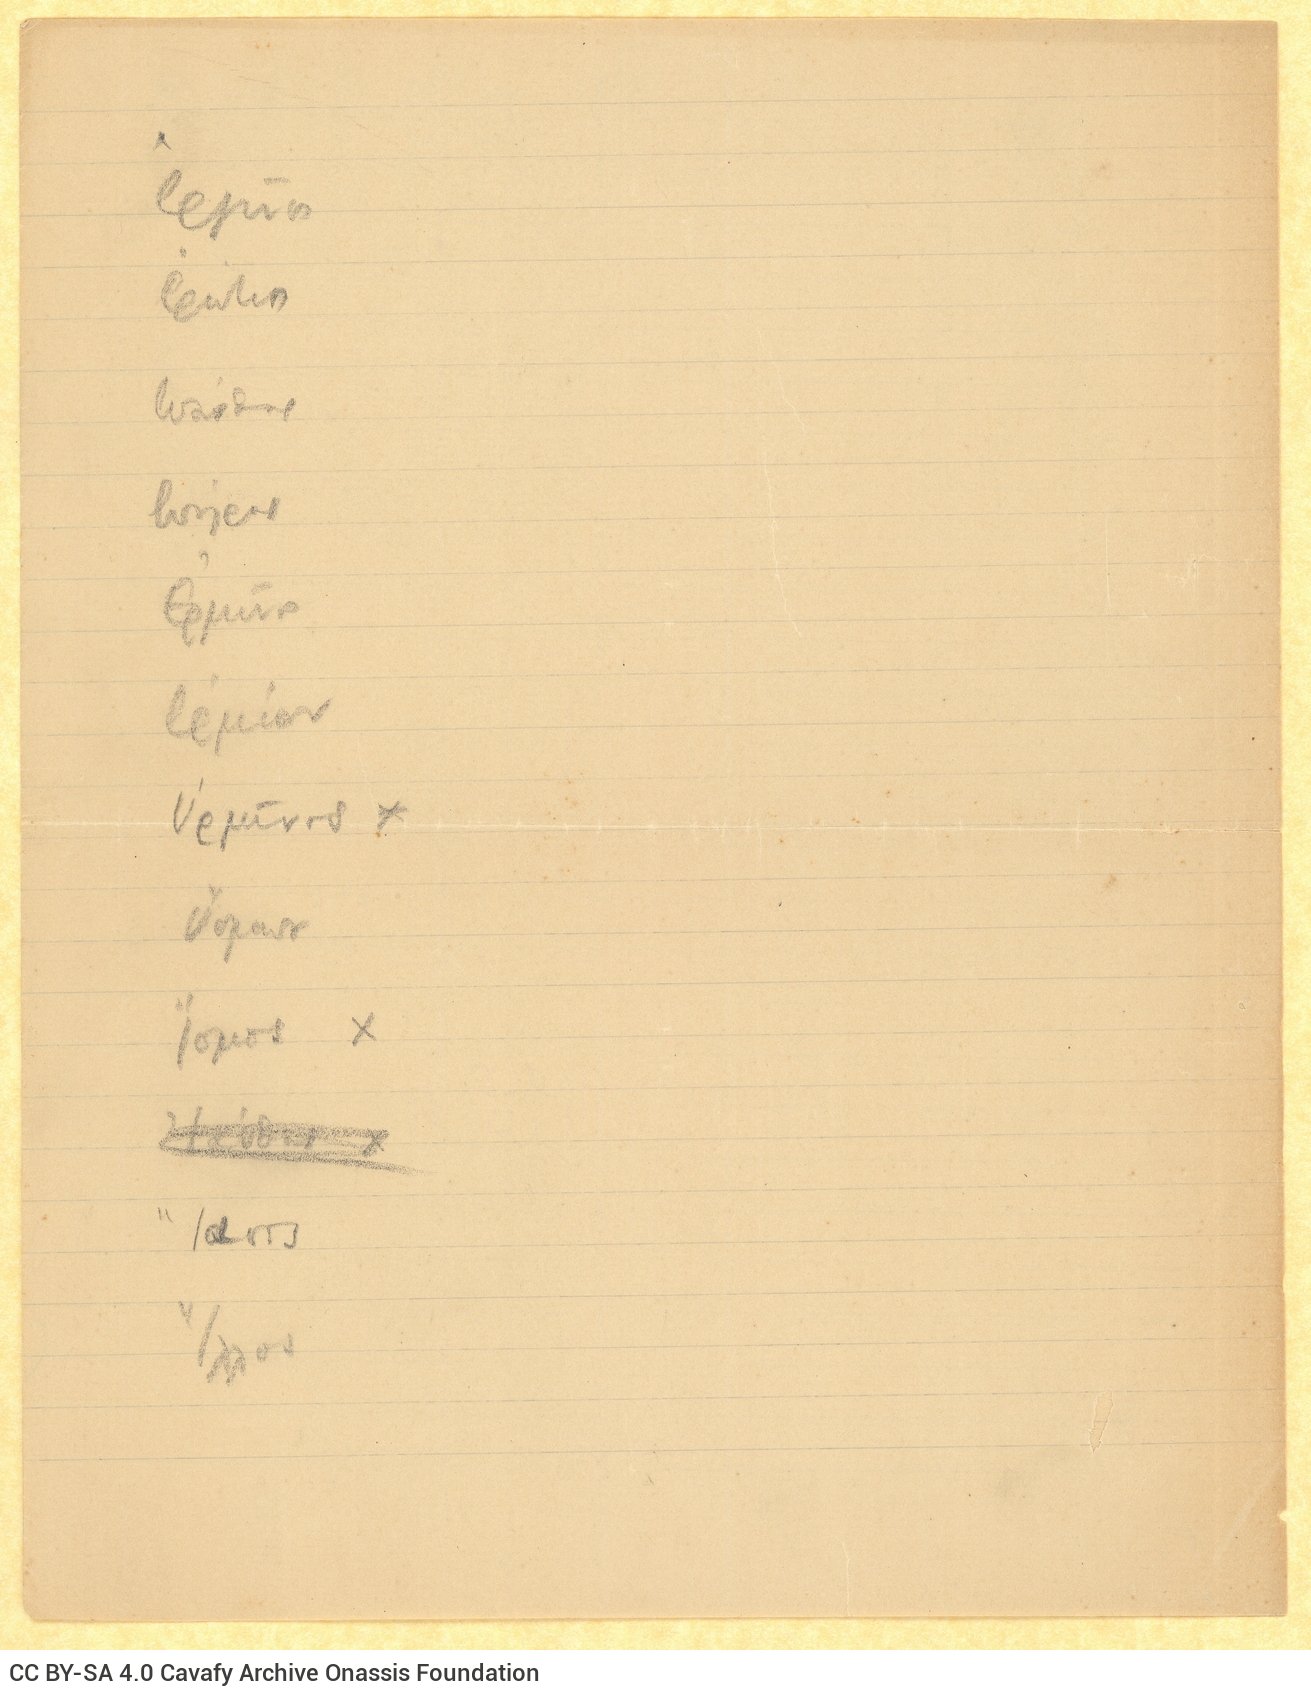 Χειρόγραφος κατάλογος αρχαιοελληνικών ονομάτων στην πρώτη σελίδα